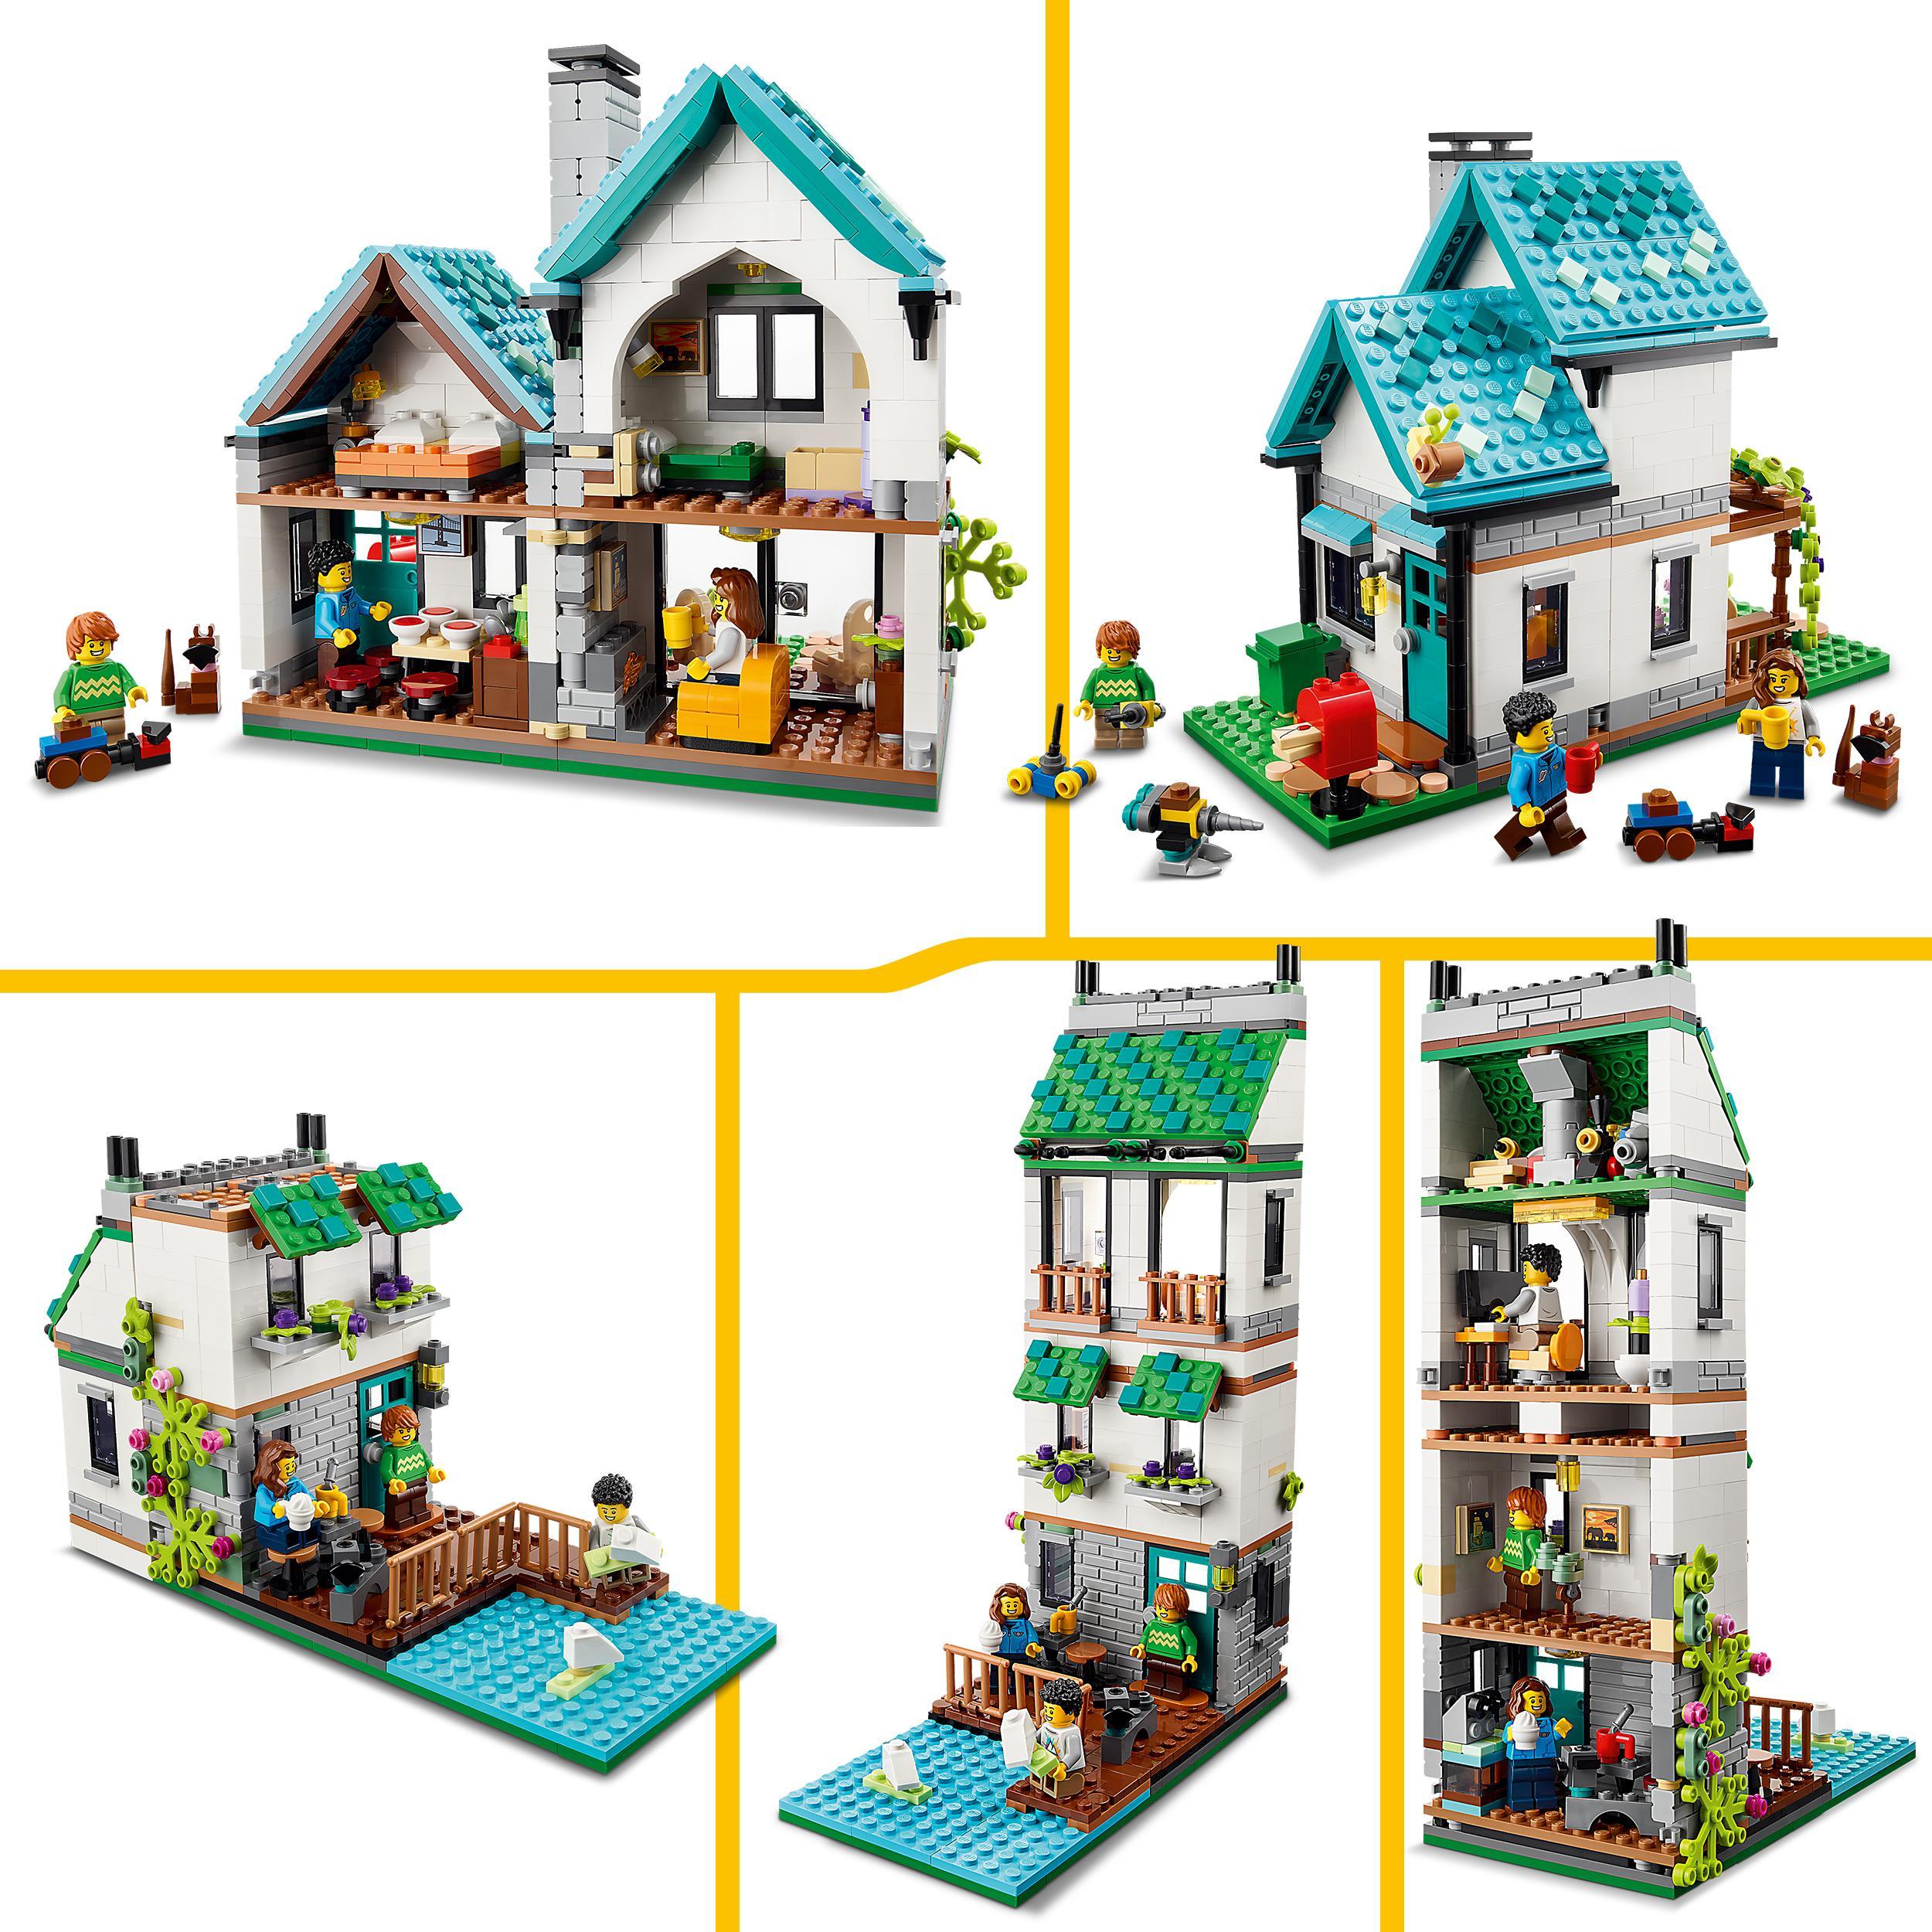 Lego creator 31139 casa accogliente, modellino da costruire di case giocattolo 3 in 1, idea regalo per bambini - LEGO CREATOR